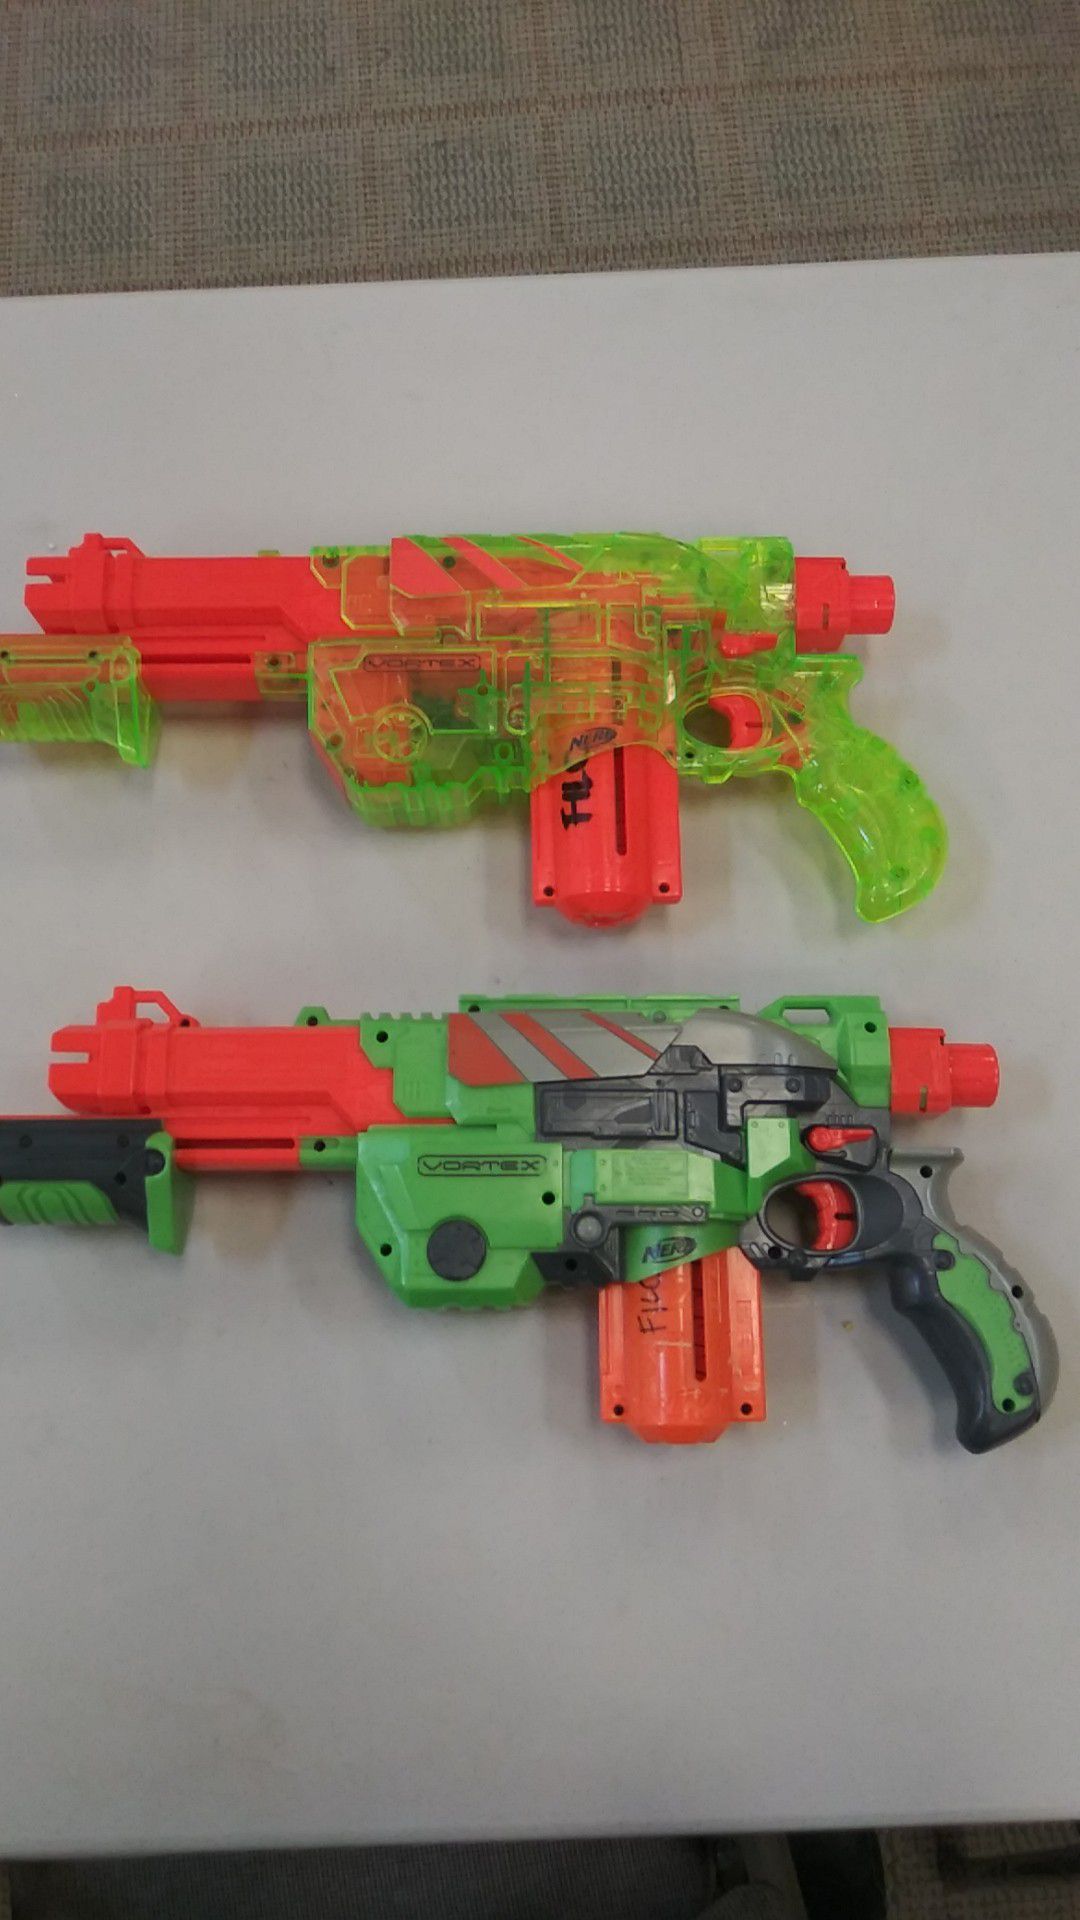 2 Vortex Nerf Guns